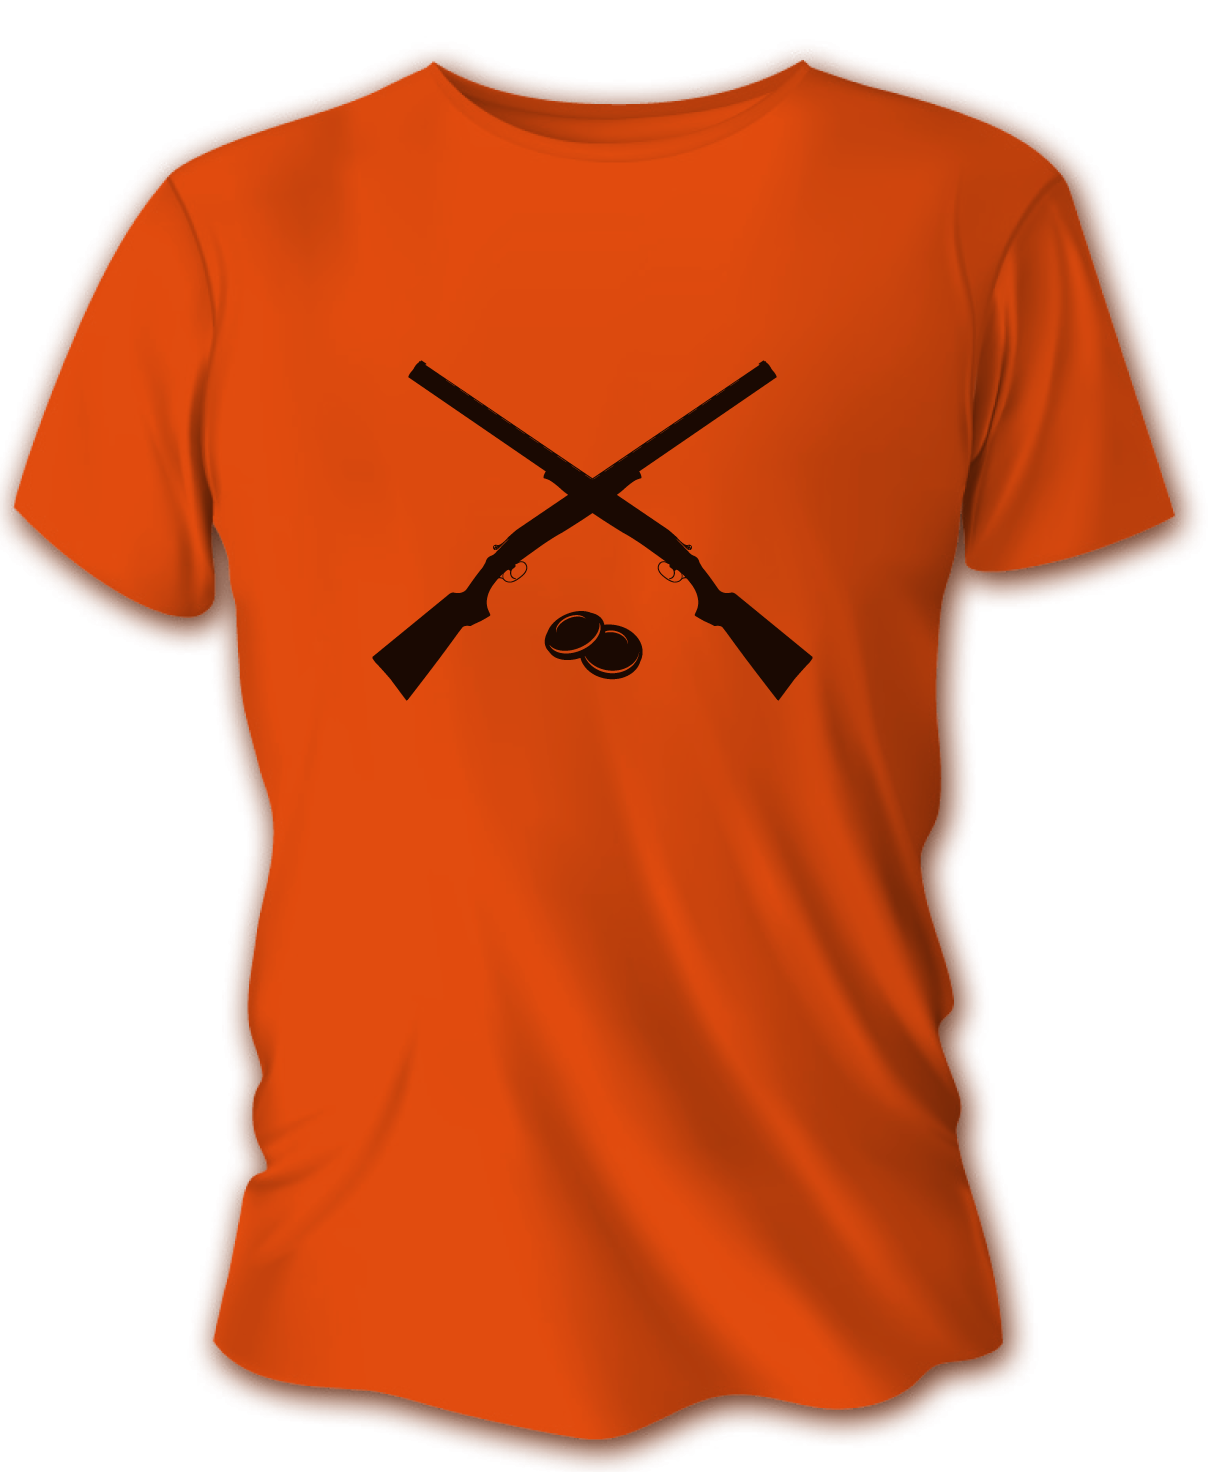 Pánske poľovnícke tričko TETRAO brokovnice - oranžové   XL